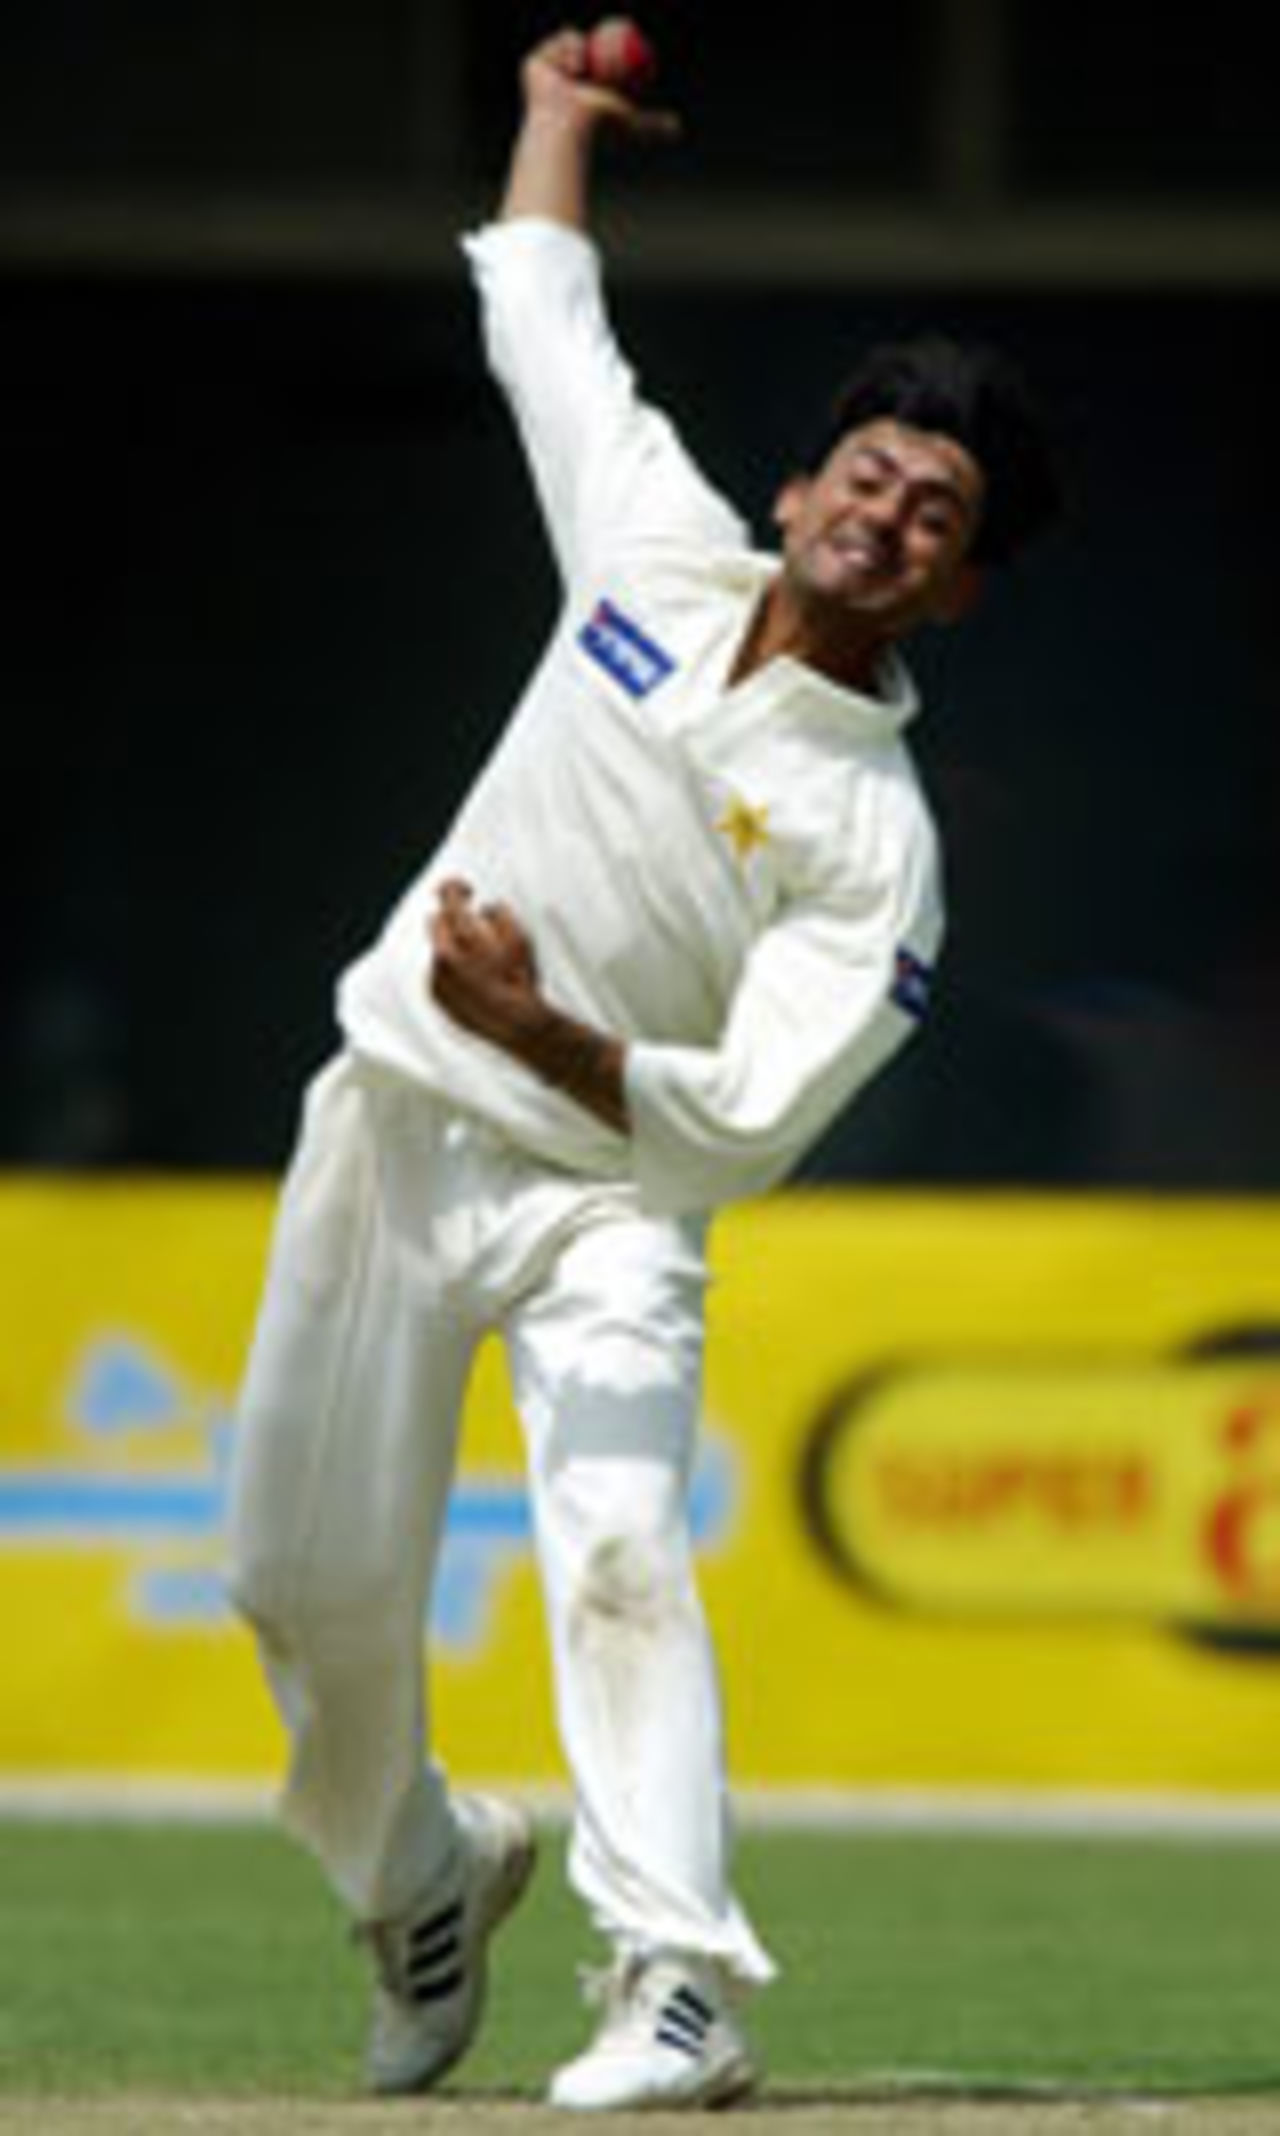 Saqlain Mushtaq bowling, Pakistan v Bangladesh, Third Test, Multan, September 3, 2003